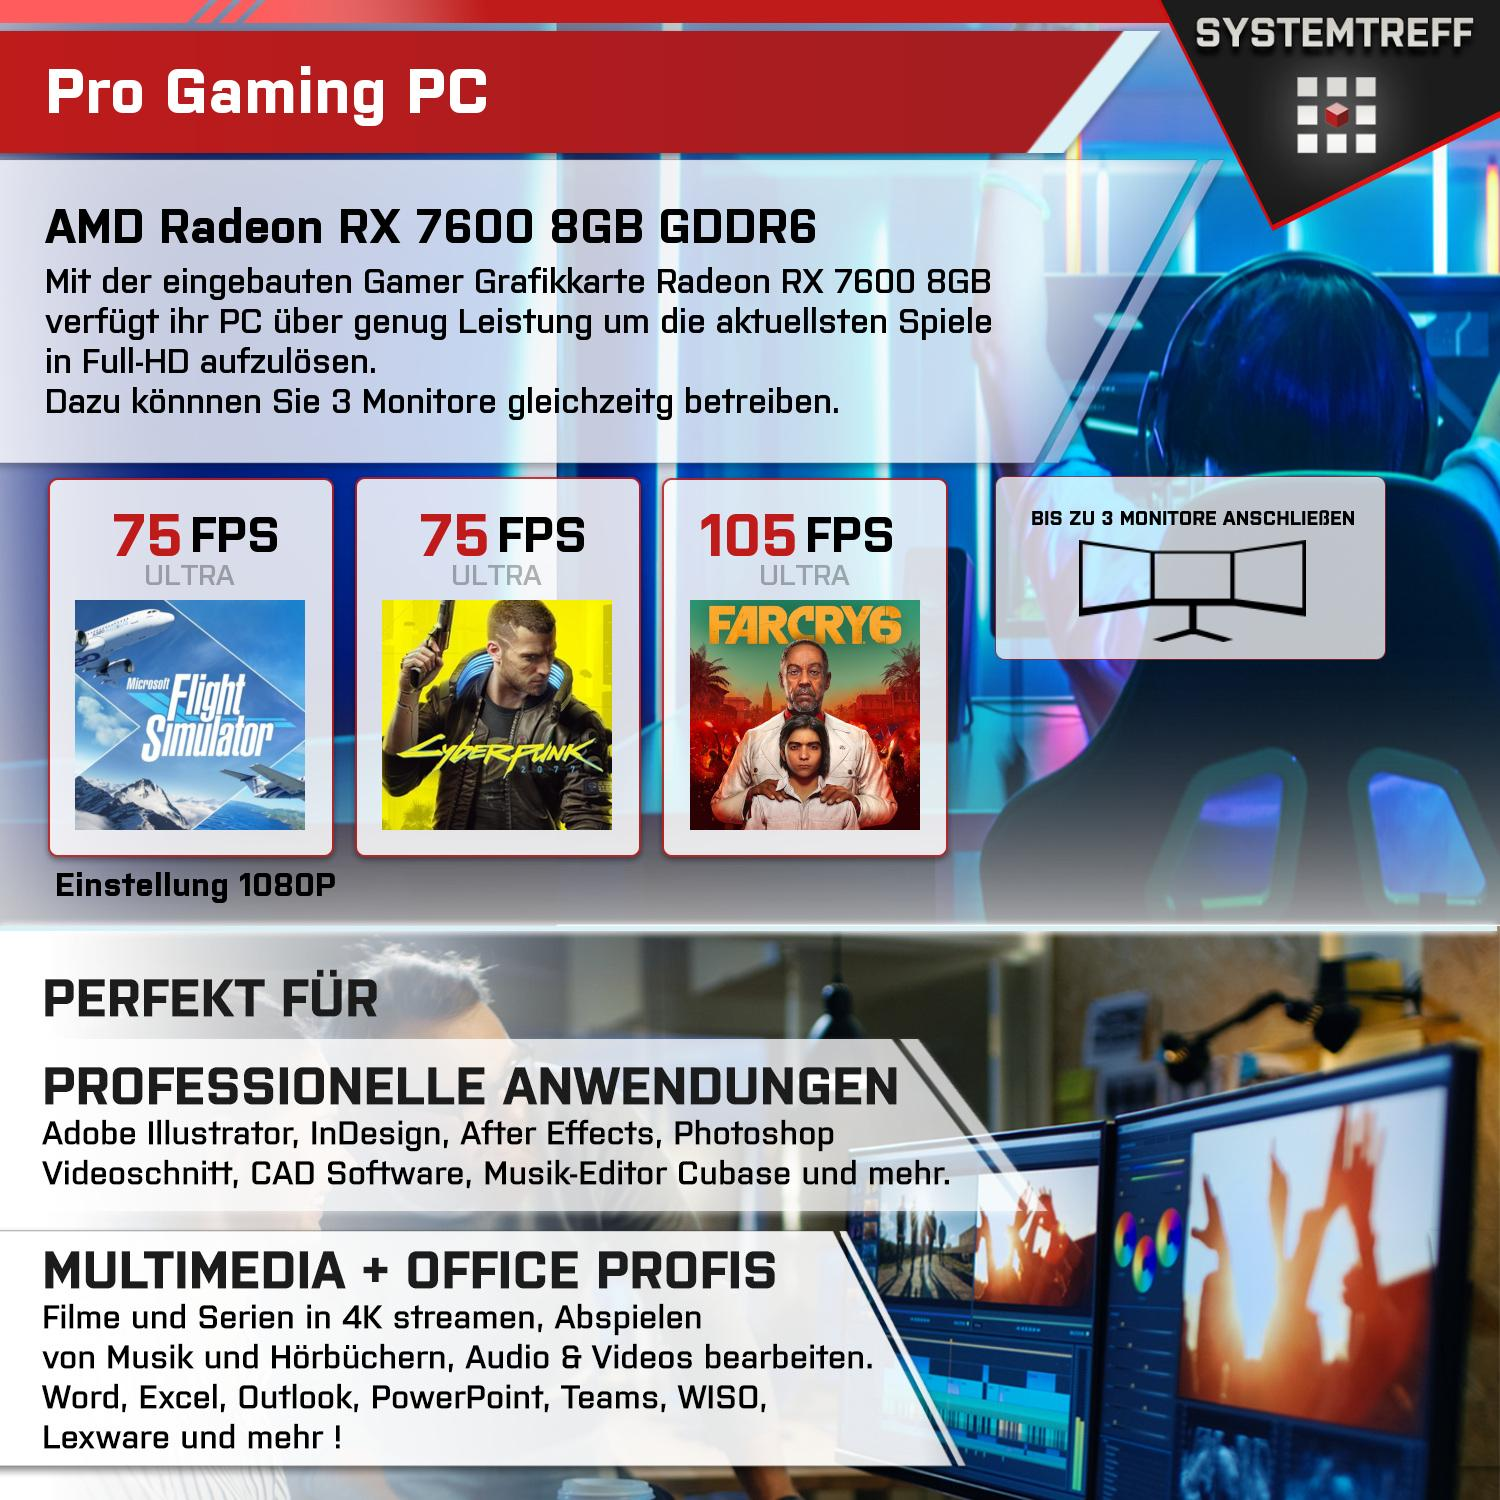 AMD Radeon Gaming GB 8 i5-13400 Core GB 16 SYSTEMTREFF Komplett i5-13400, RAM, 8GB Komplett mSSD, 7600 1000 Intel RX GDDR6, GB PC Prozessor, mit